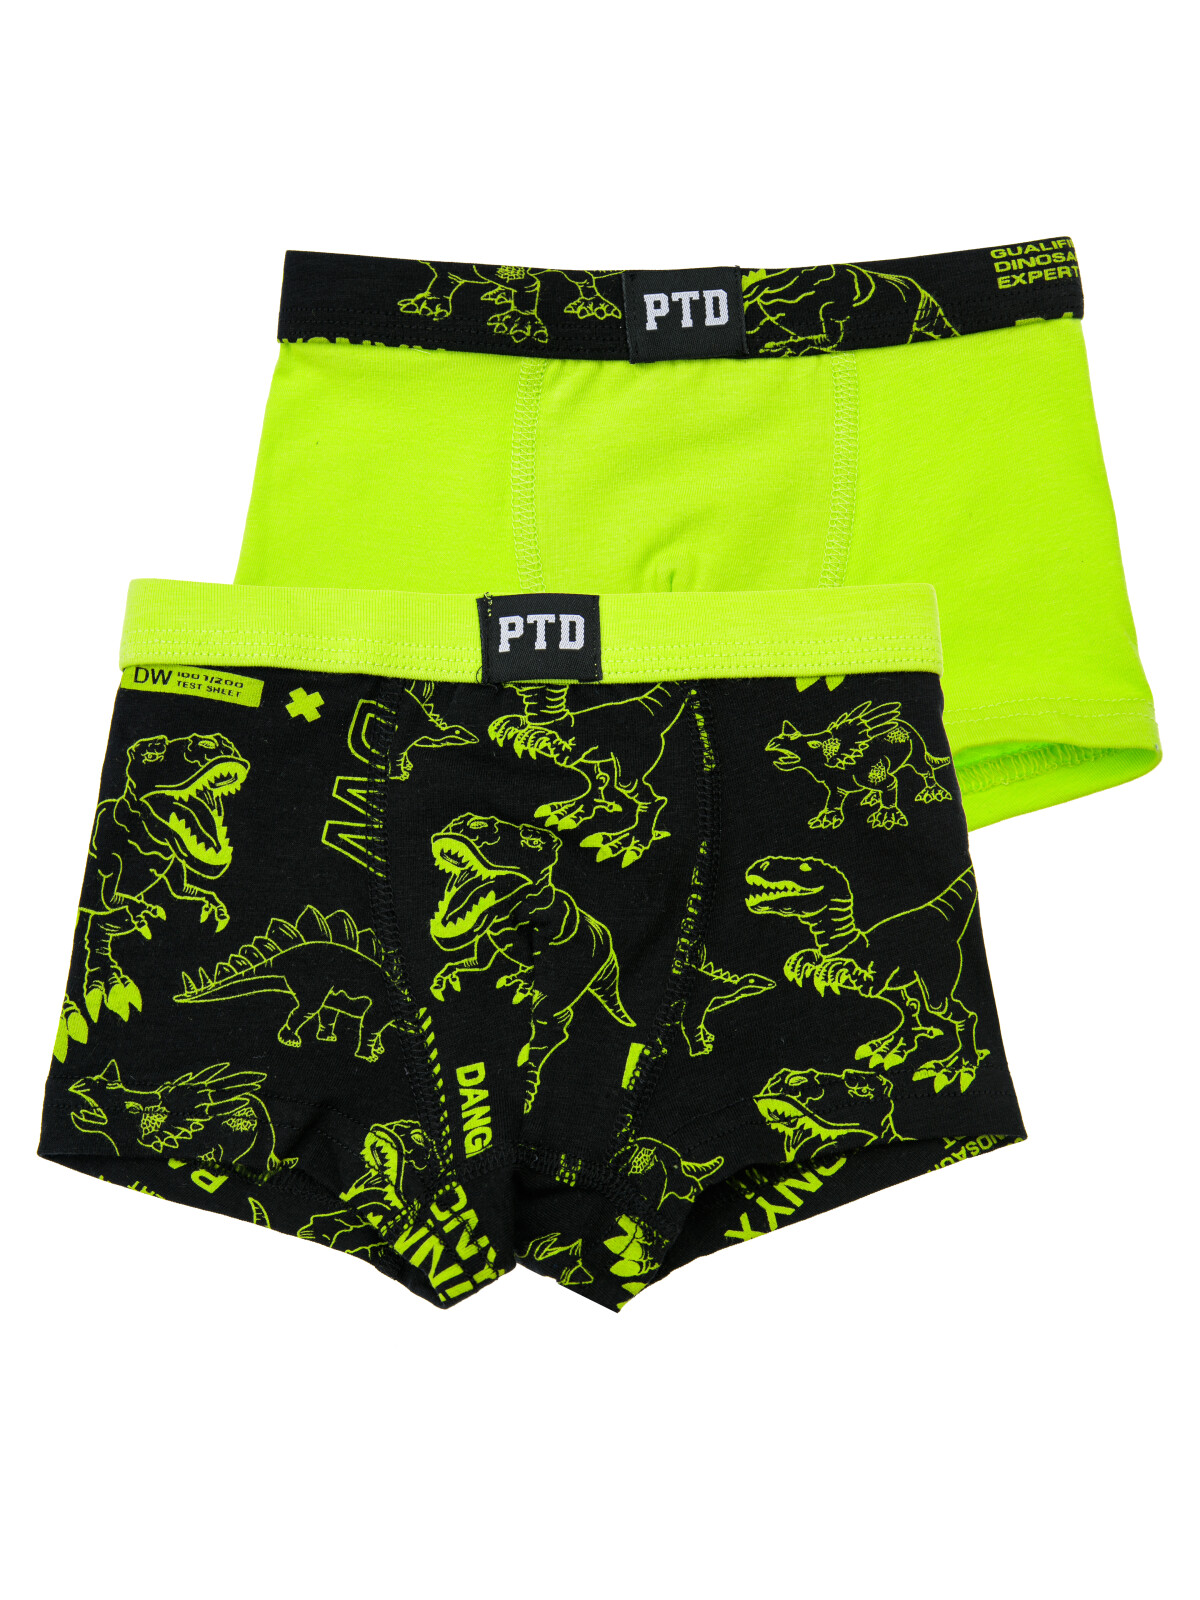 Трусы для мальчиков PlayToday - боксеры, 2 шт в комплекте, светло-зеленый,черный, 110-116